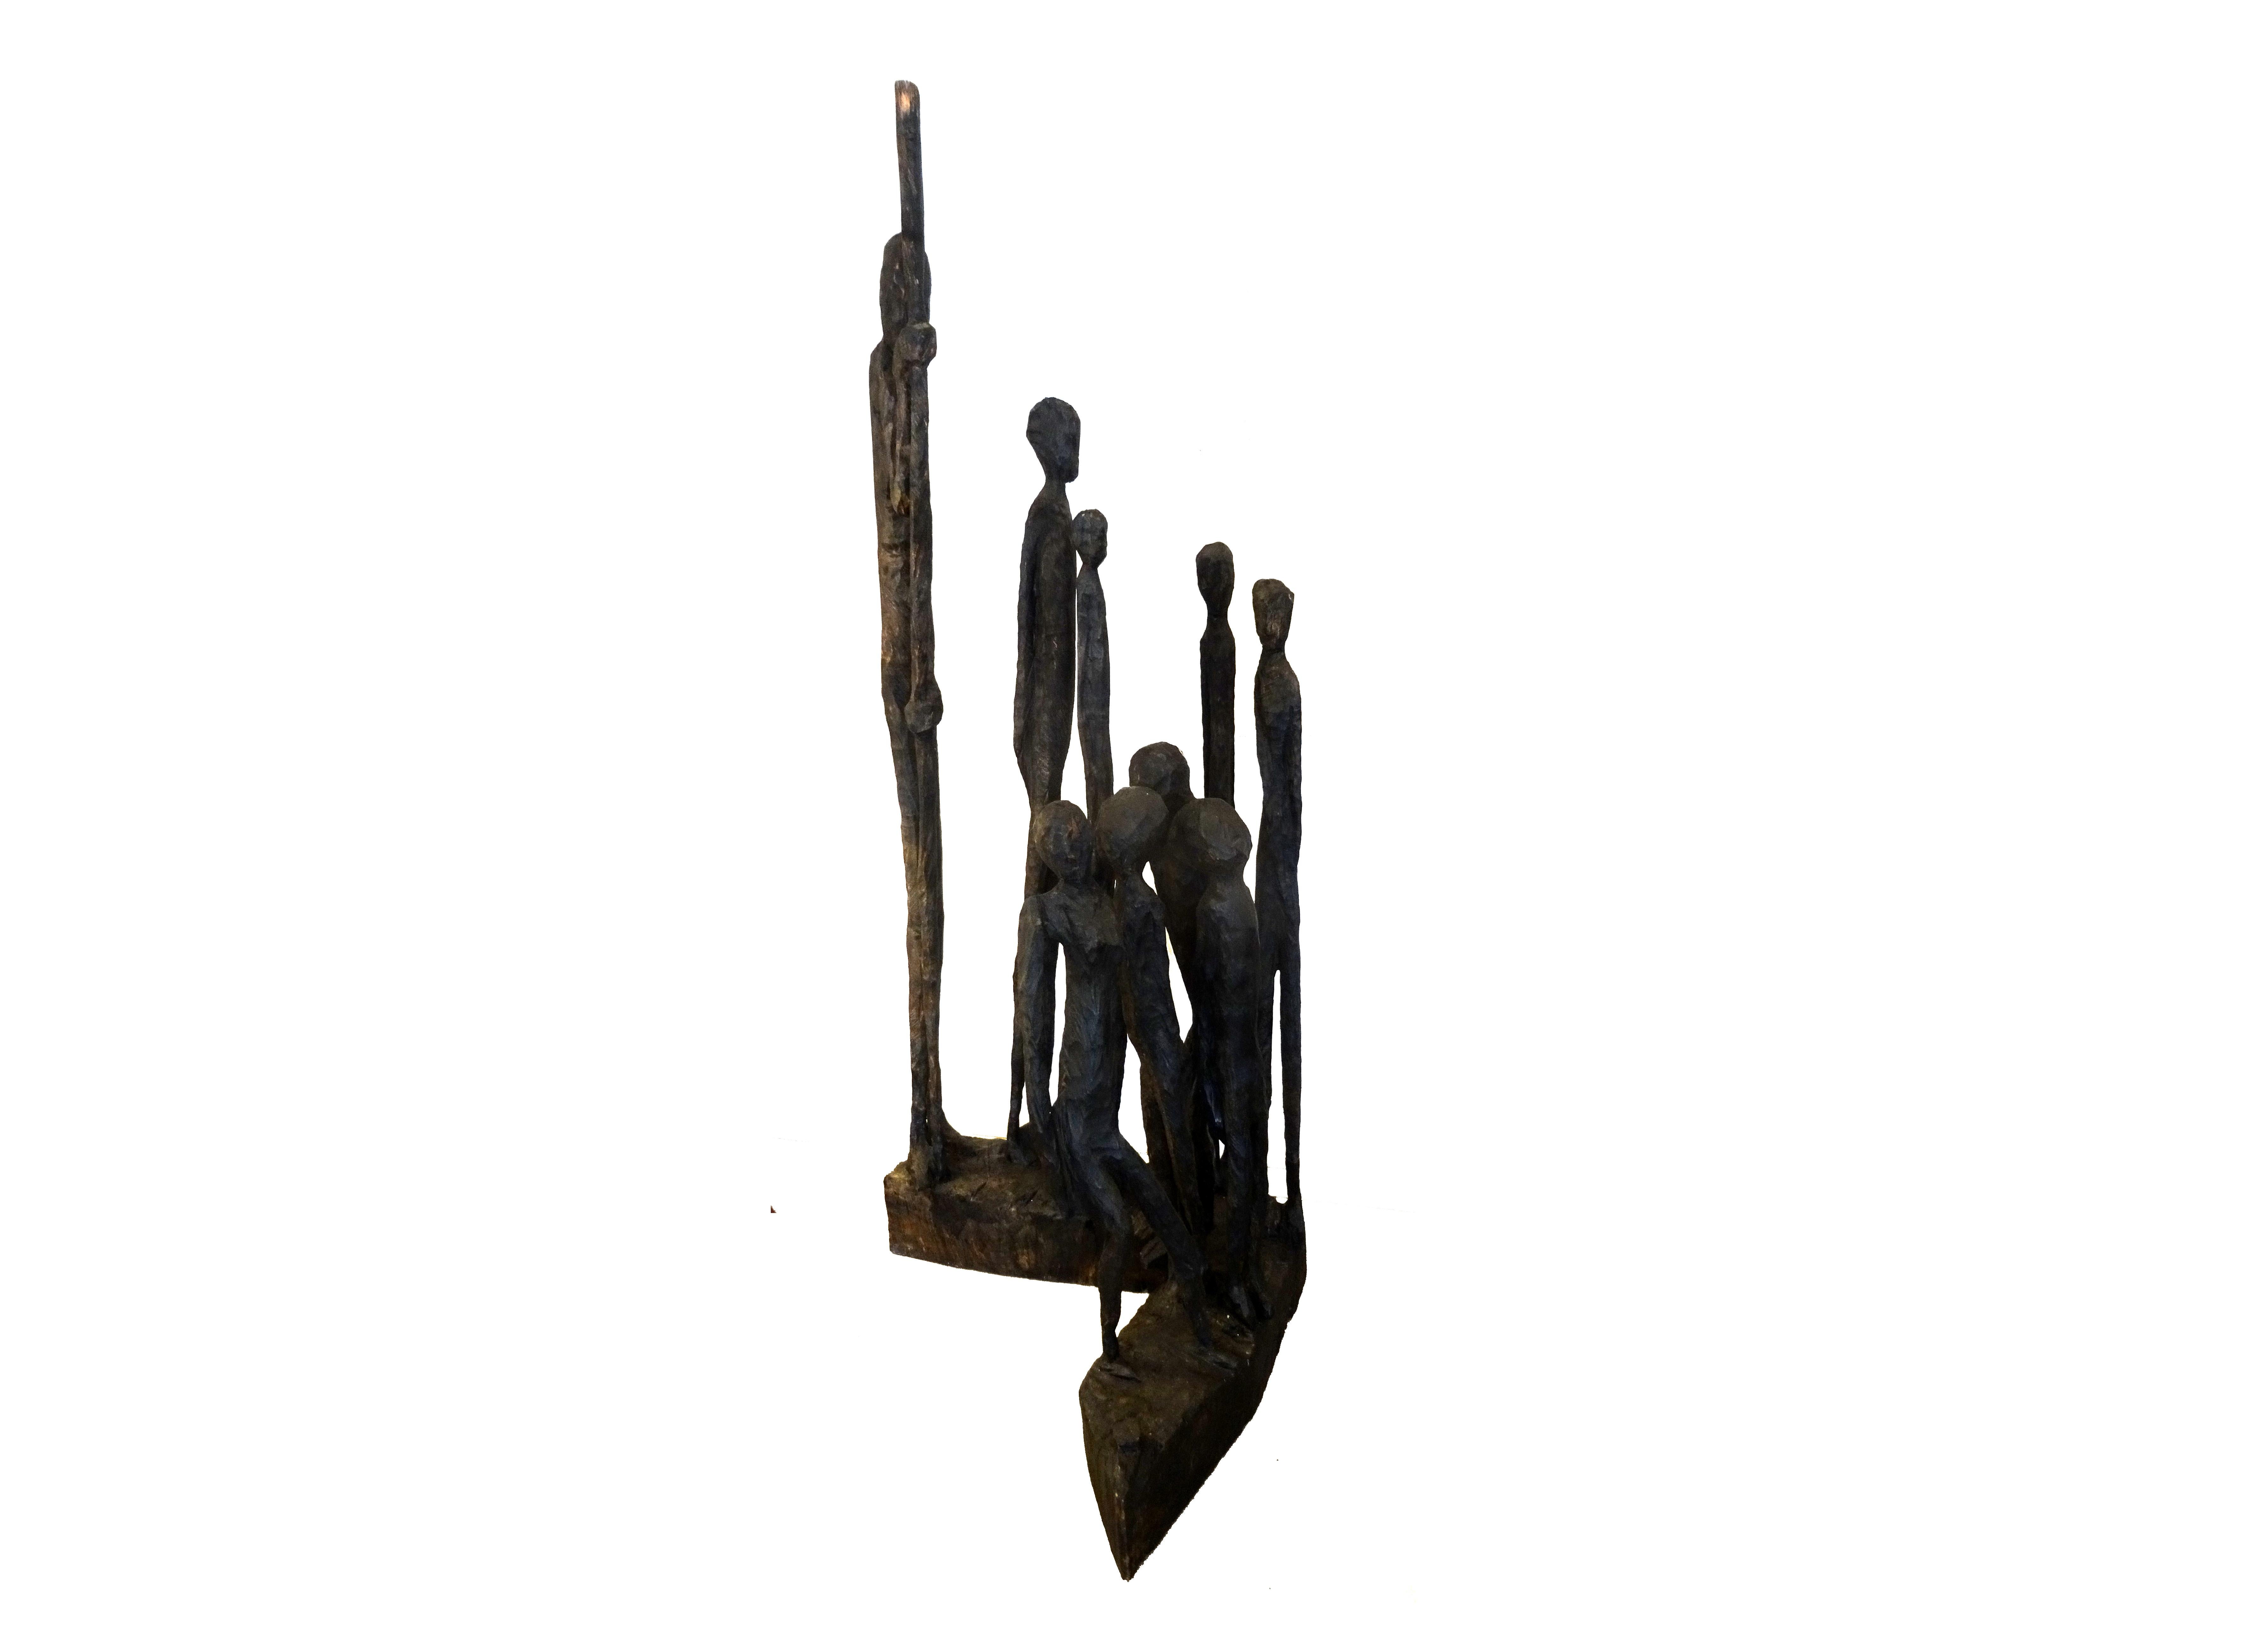 Skulptur, Holz, mit Feuer geschwärzt

Jems Robert Koko Bi, geboren 1966 in Sinfra an der Elfenbeinküste, kam nach seinem Studium in Abidjan nach Deutschland. Er arbeitete von 1992-1995 in der Werkstattt von Klaus Simon und war ab 2000 Meisterschüler